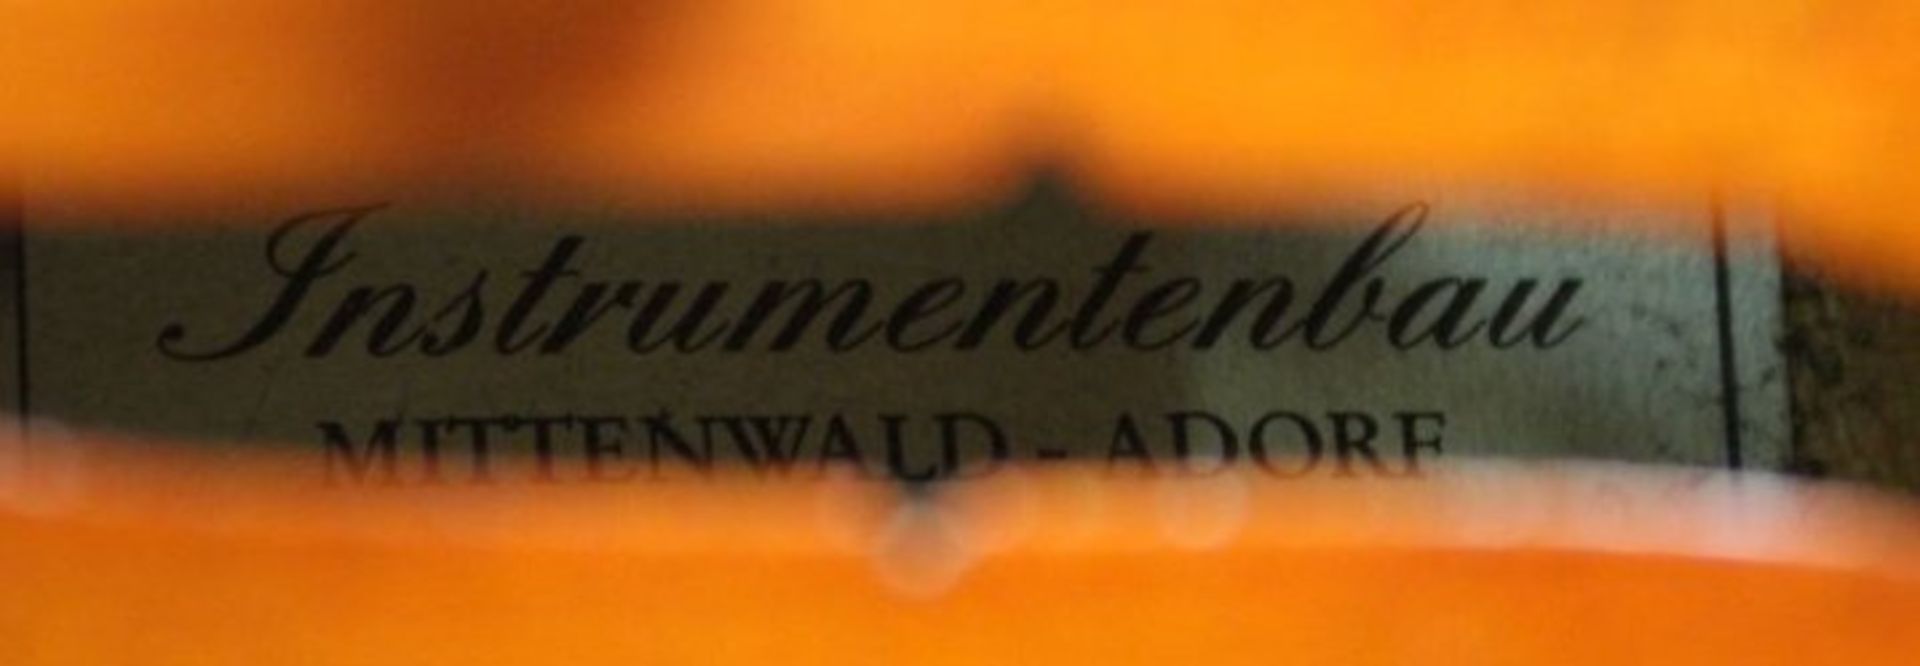 Geige, innen Klebeetikett "Intrumentenbau Mittenwald -Adorf", guter Zustand, anbei Bogen, L-57cm, in - Bild 7 aus 9